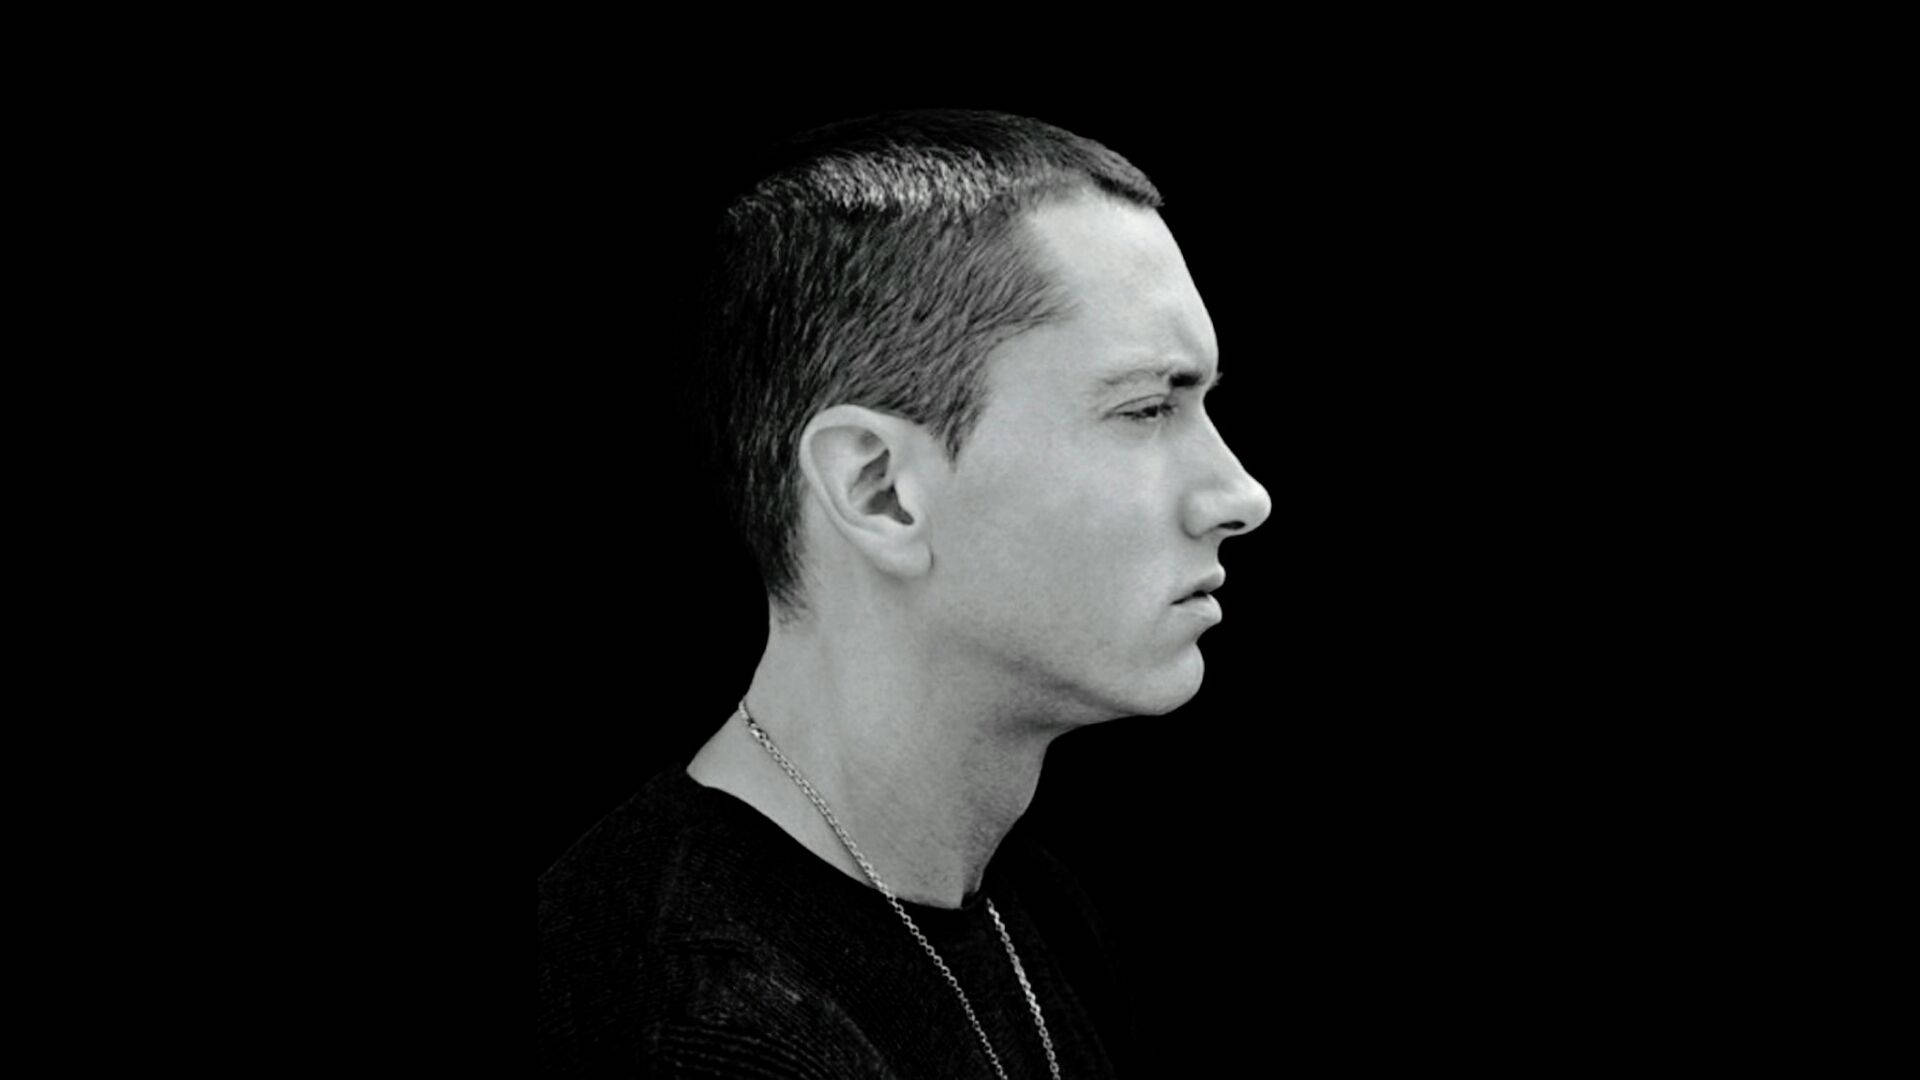 Free Eminem Wallpaper Downloads, [100+] Eminem Wallpapers for FREE |  